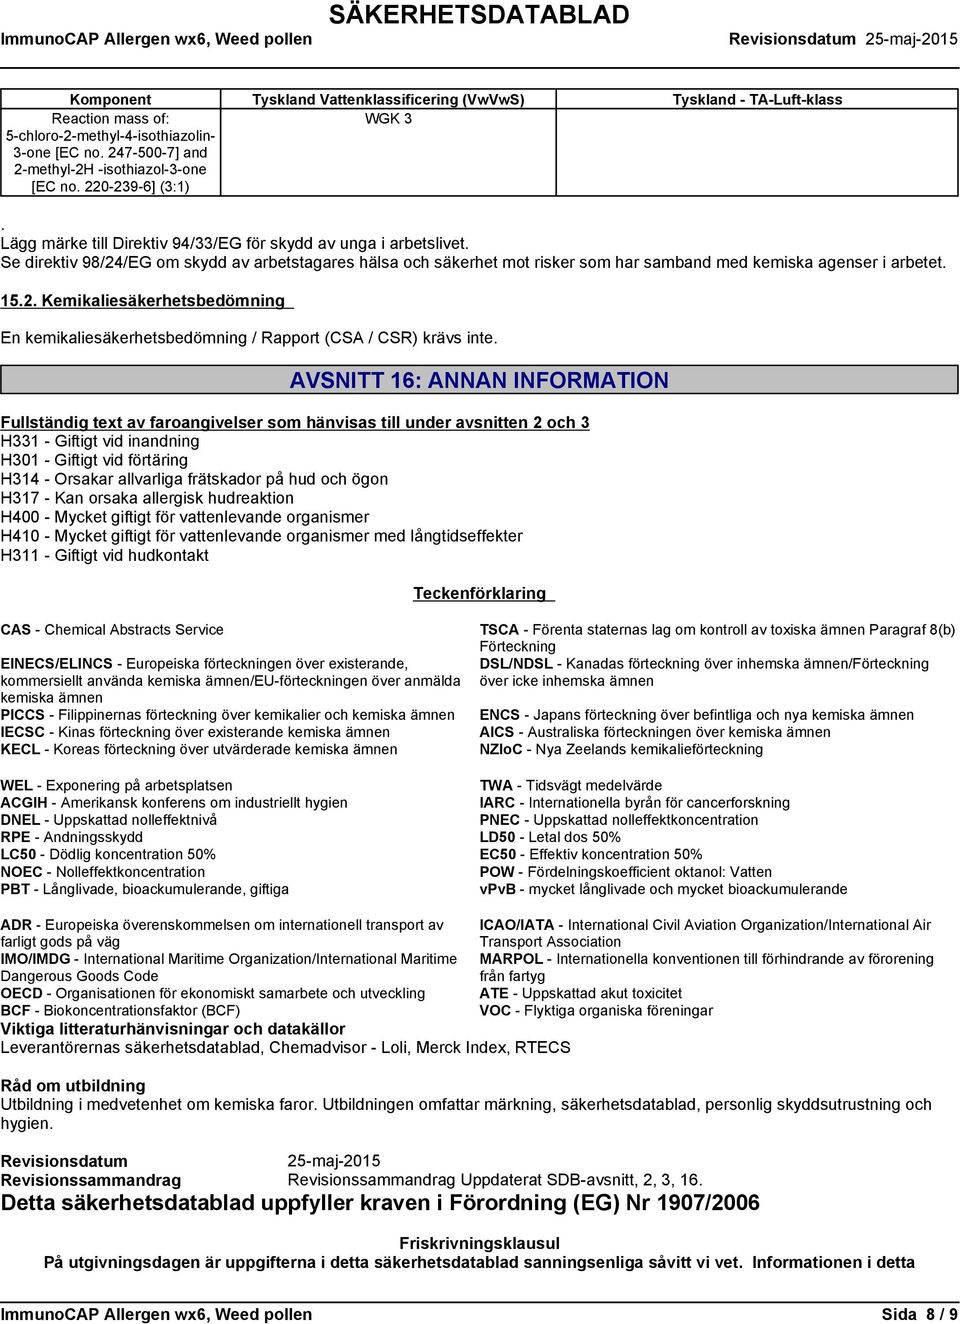 AVSNITT 16: ANNAN INFORMATION Fullständig text av faroangivelser som hänvisas till under avsnitten 2 och 3 H331 - Giftigt vid inandning H301 - Giftigt vid förtäring H314 - Orsakar allvarliga